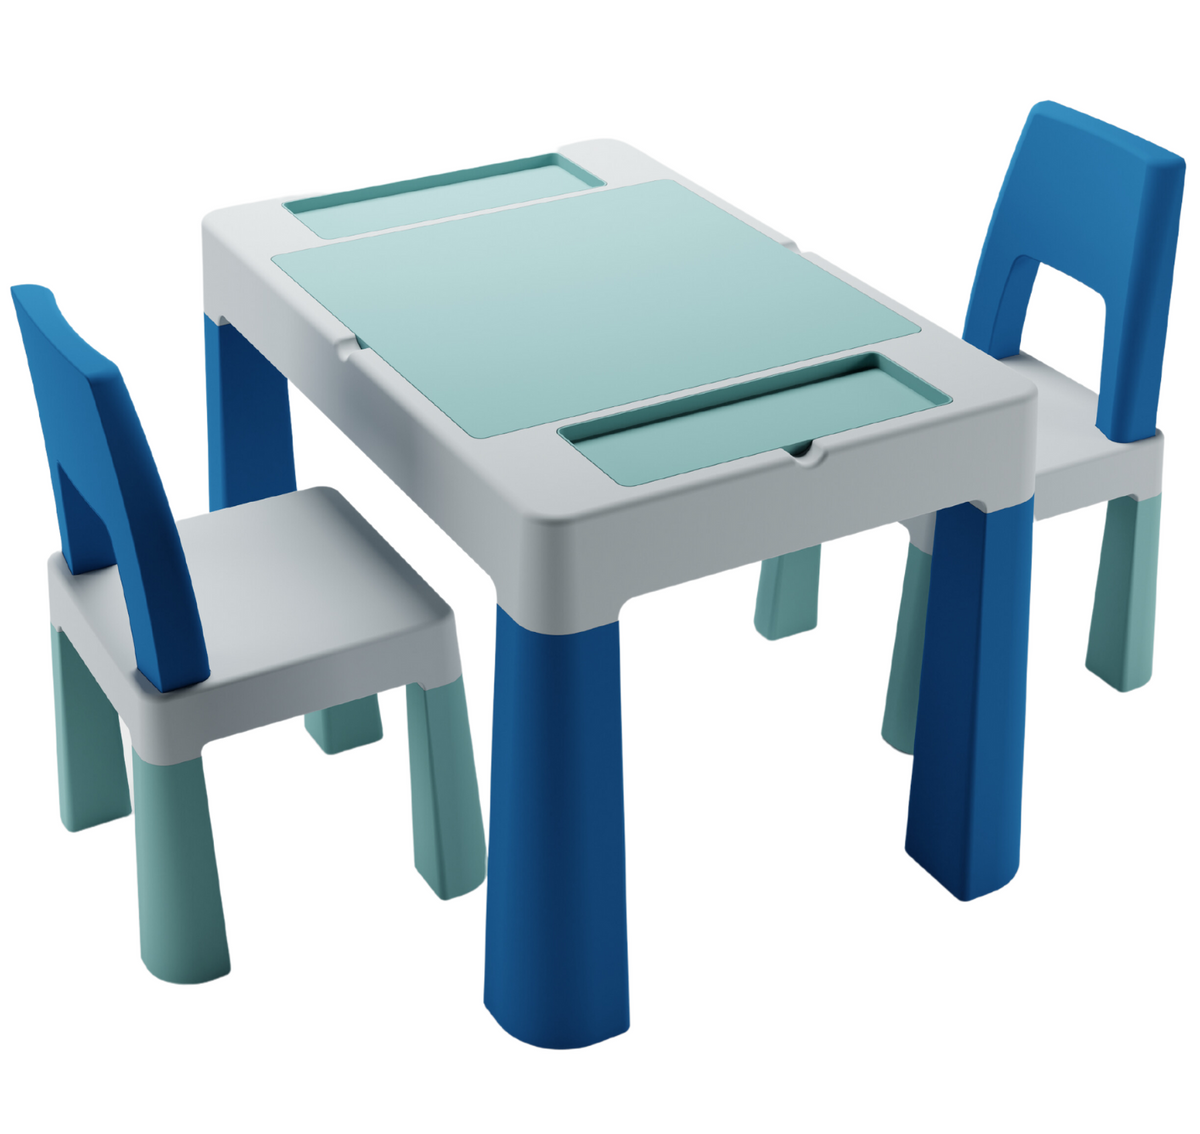 Комплект дитячих меблів (стіл, 2 стільця) Tega Baby Teggi Multifun Turquoise-Navy (TI-011-173)